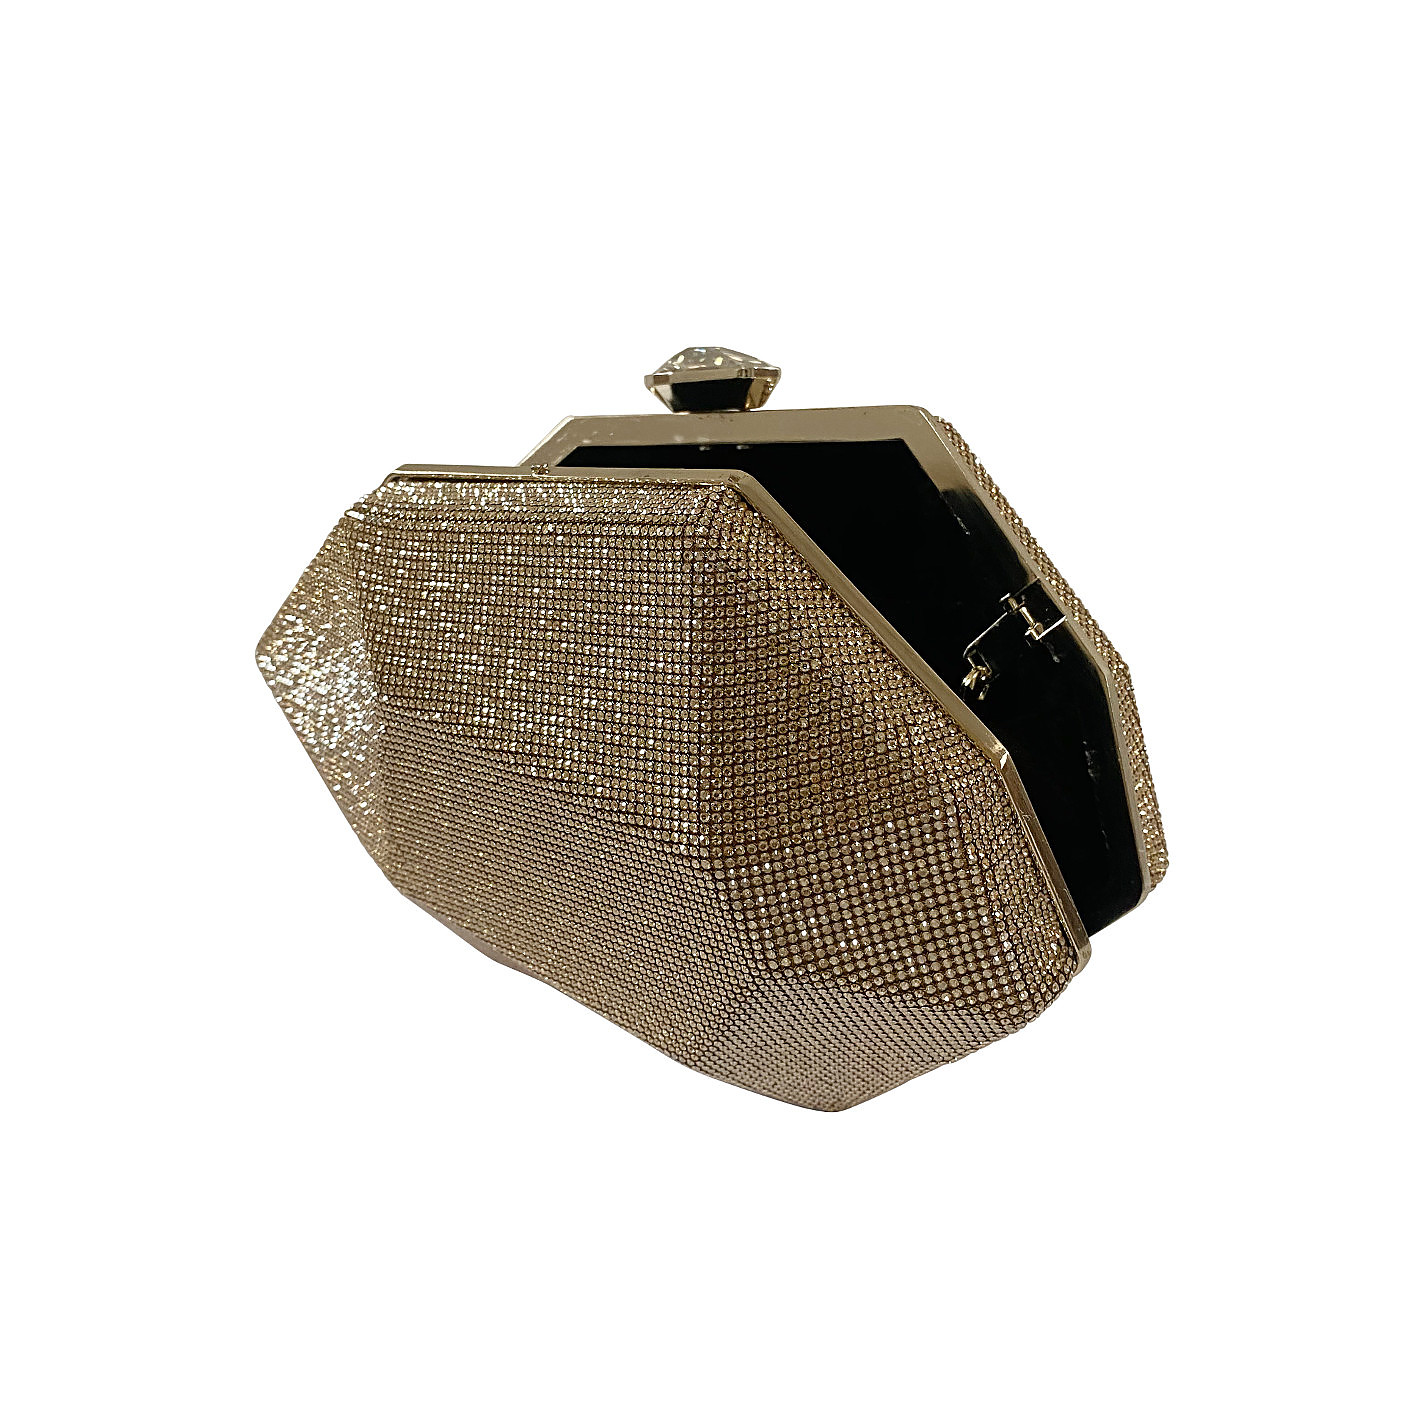 Atelier Swarovski Crystal geometric clutch with chain gold